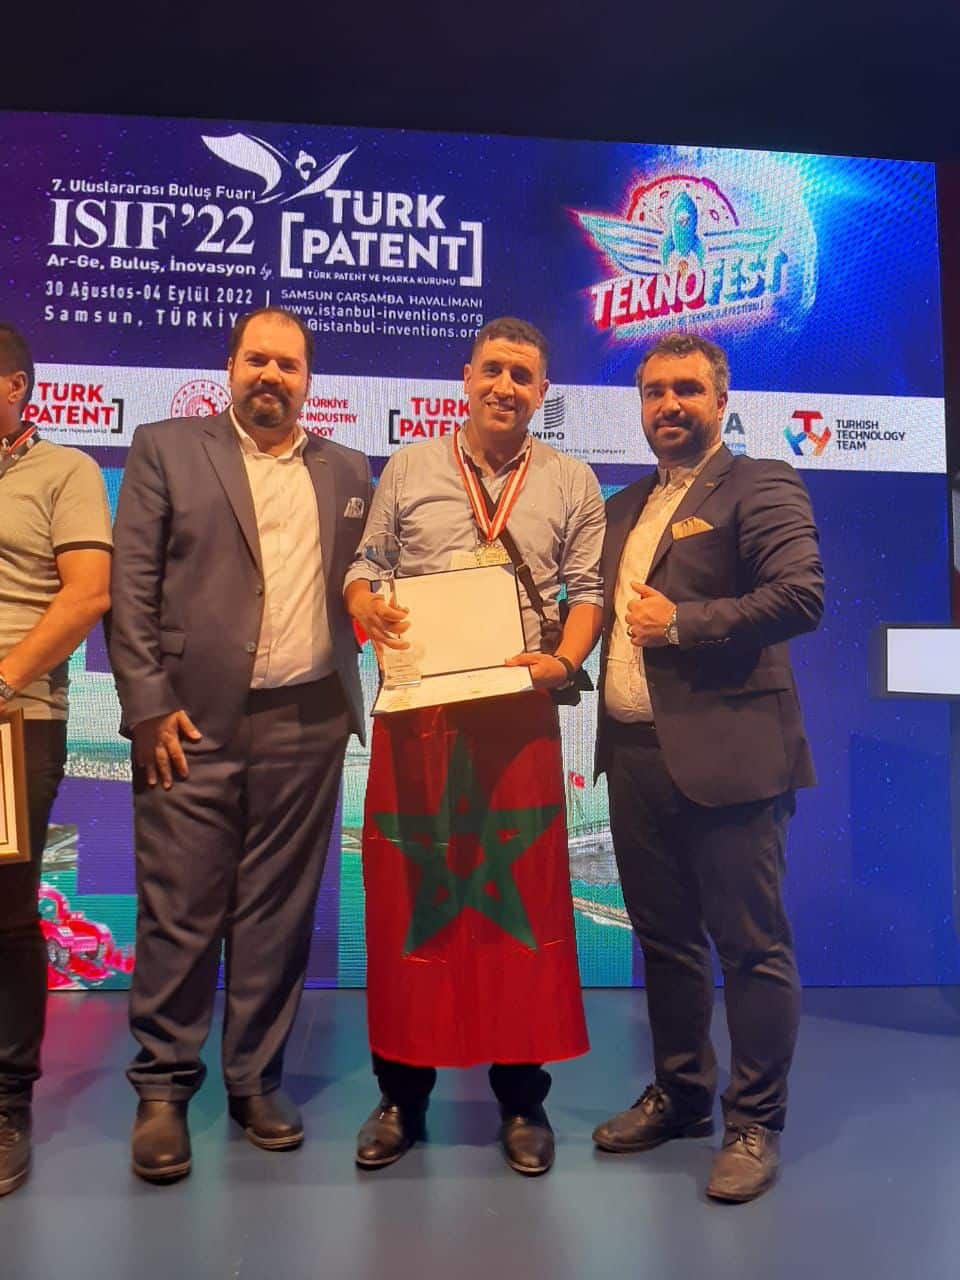 إسطنبول: المغرب يحصد الذهب والجائزة الدولية الكبرى في معرض إسطنبول الدولي للإختراعات ISIF’22.